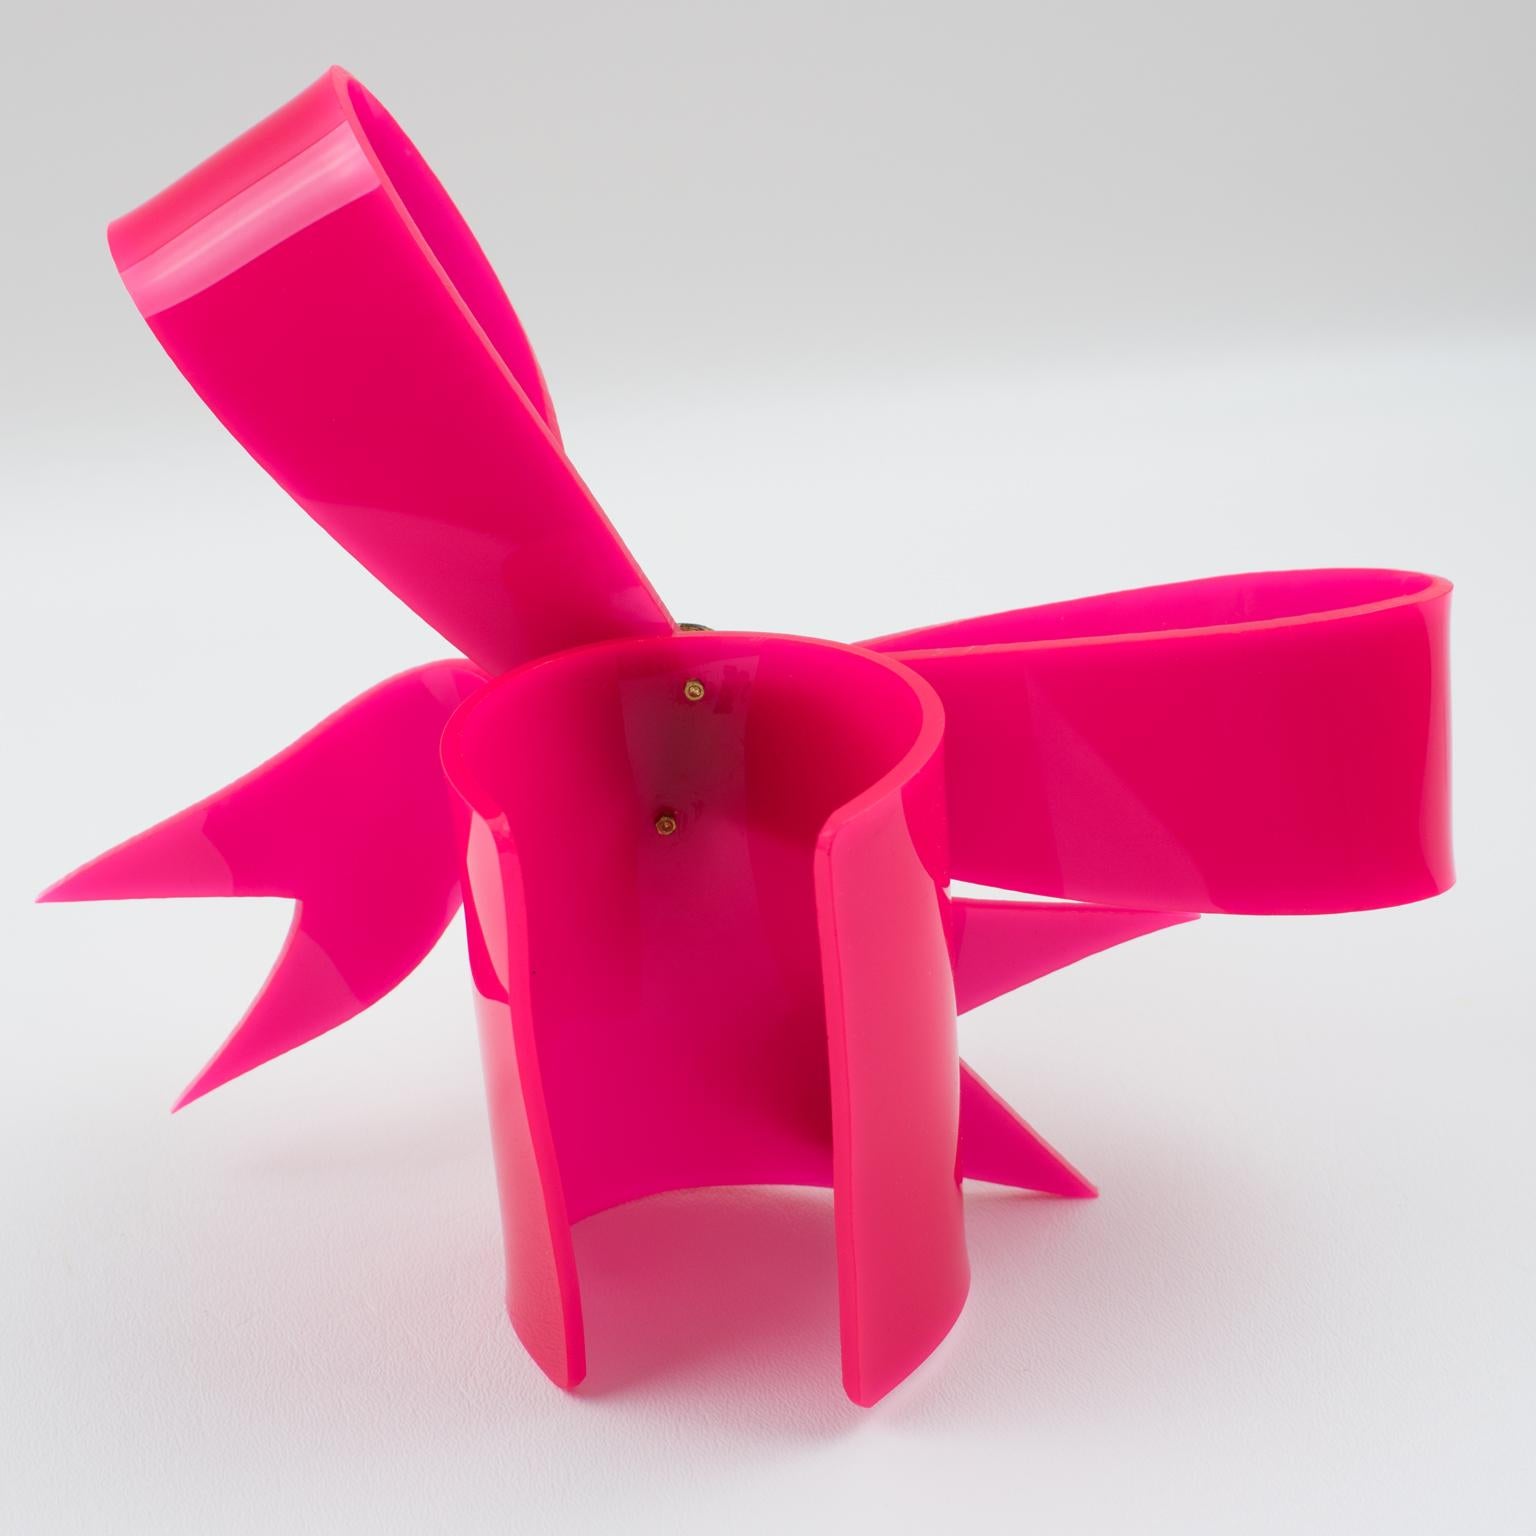 Vivienne Westwood Prototype Cuff Bangle Bracelet Pink Acrylic Bow 7